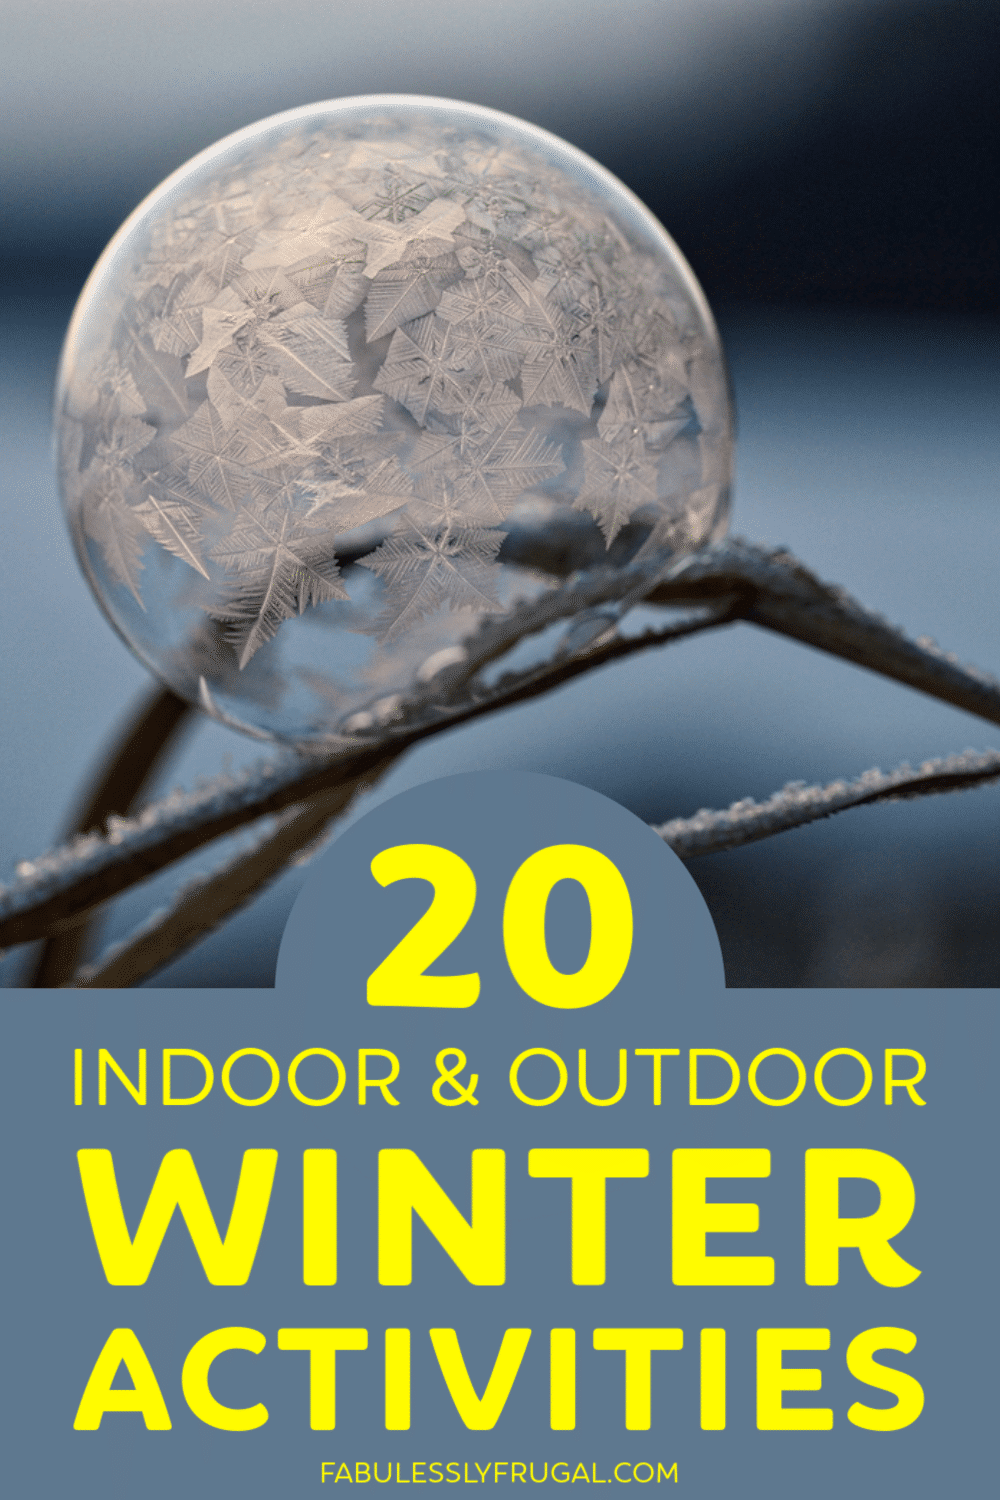 Indoor and outdoor winter activities